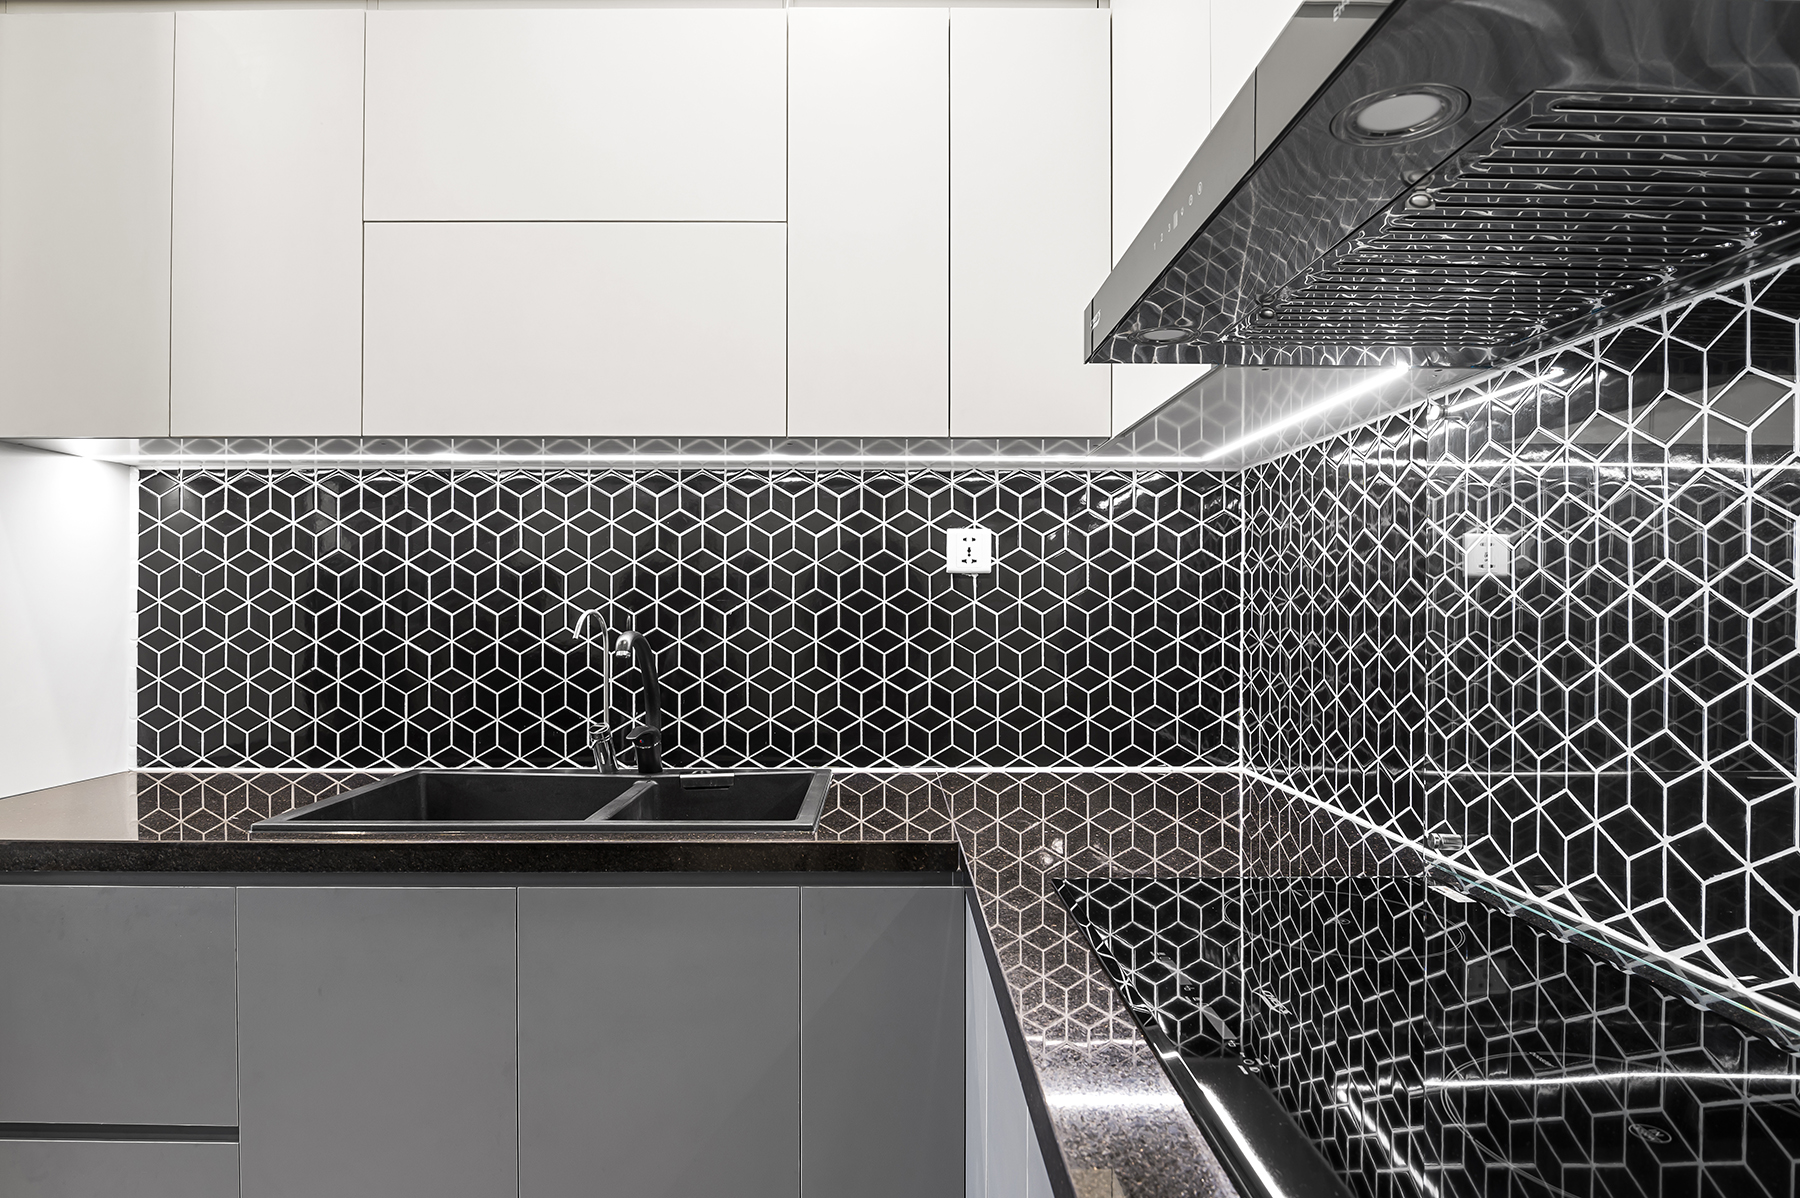 Thiết kế nội thất phòng khách khu bếp với mặt ốp bằng gạch mossaic đen độc đáo